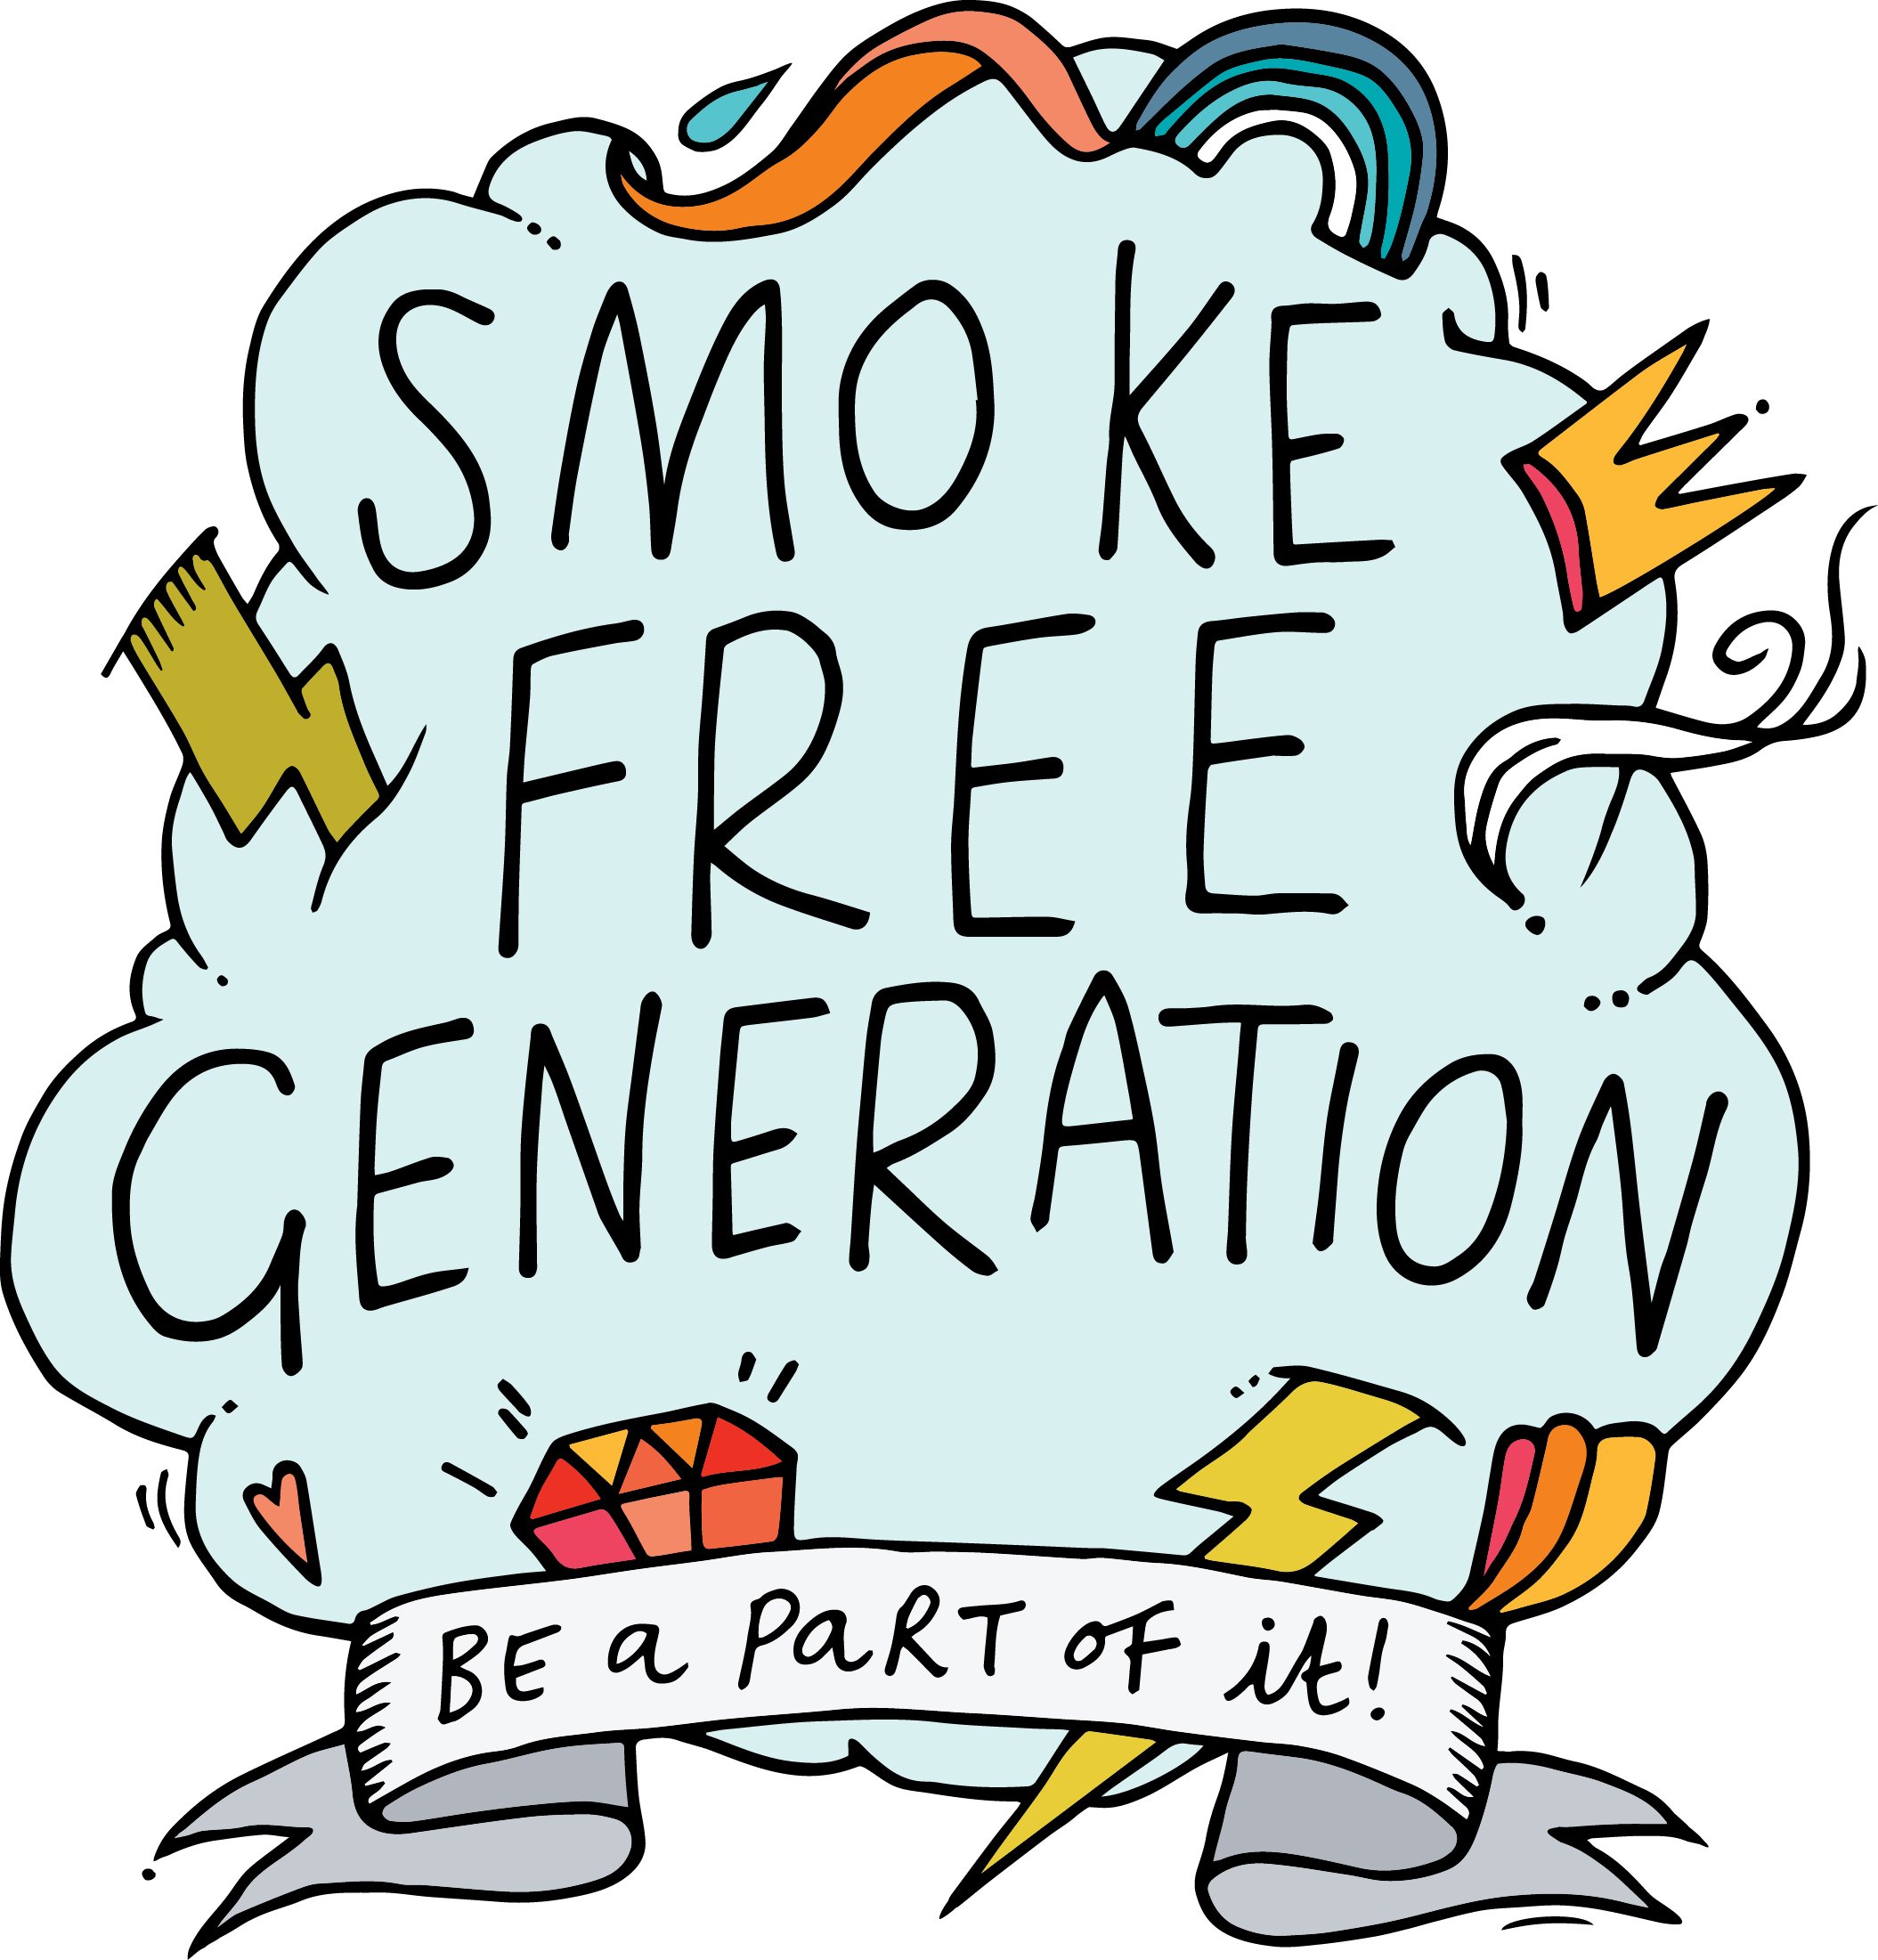 Smoking Information and resources - Smoke Free Generation